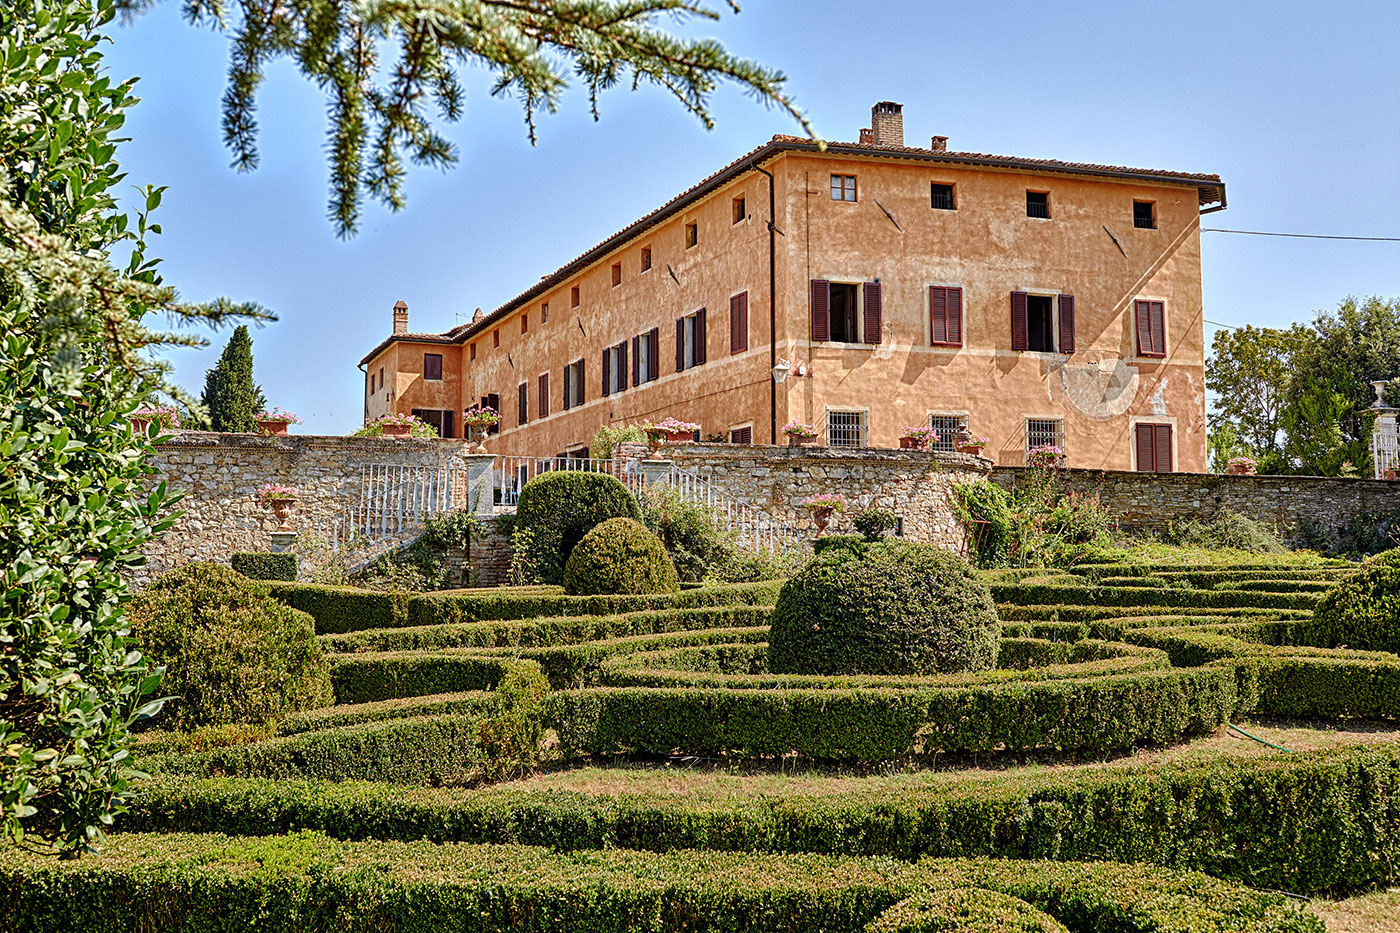 Villa Catignano Wedding Venue